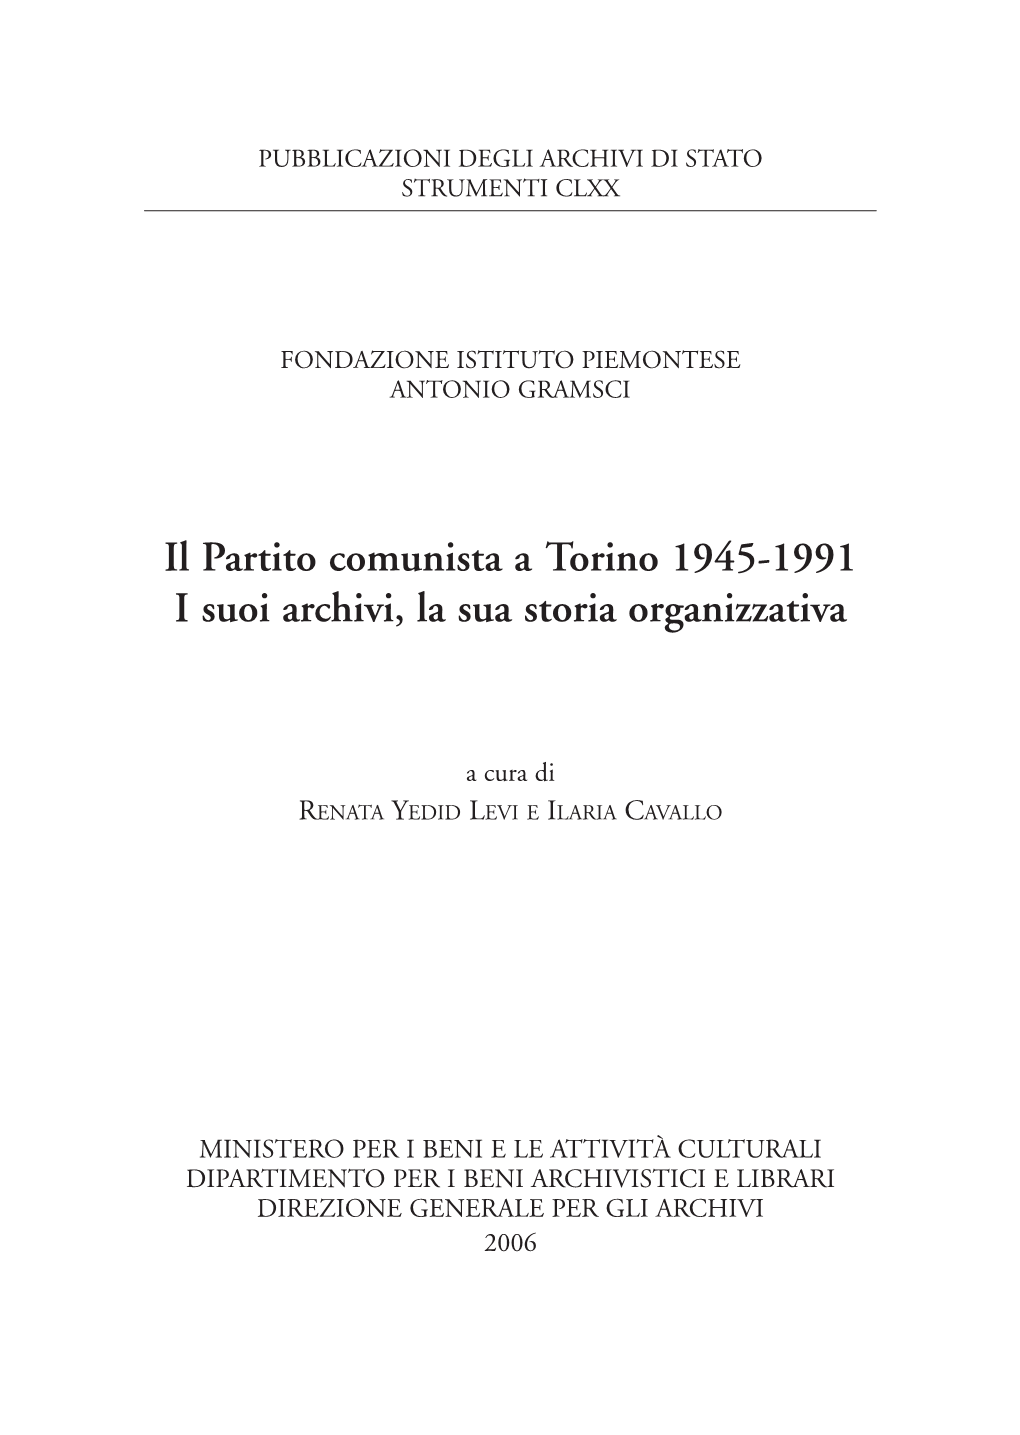 Il Partito Comunista a Torino 1945-1991. I Suoi Archivi, La Sua Storia Organizzativa